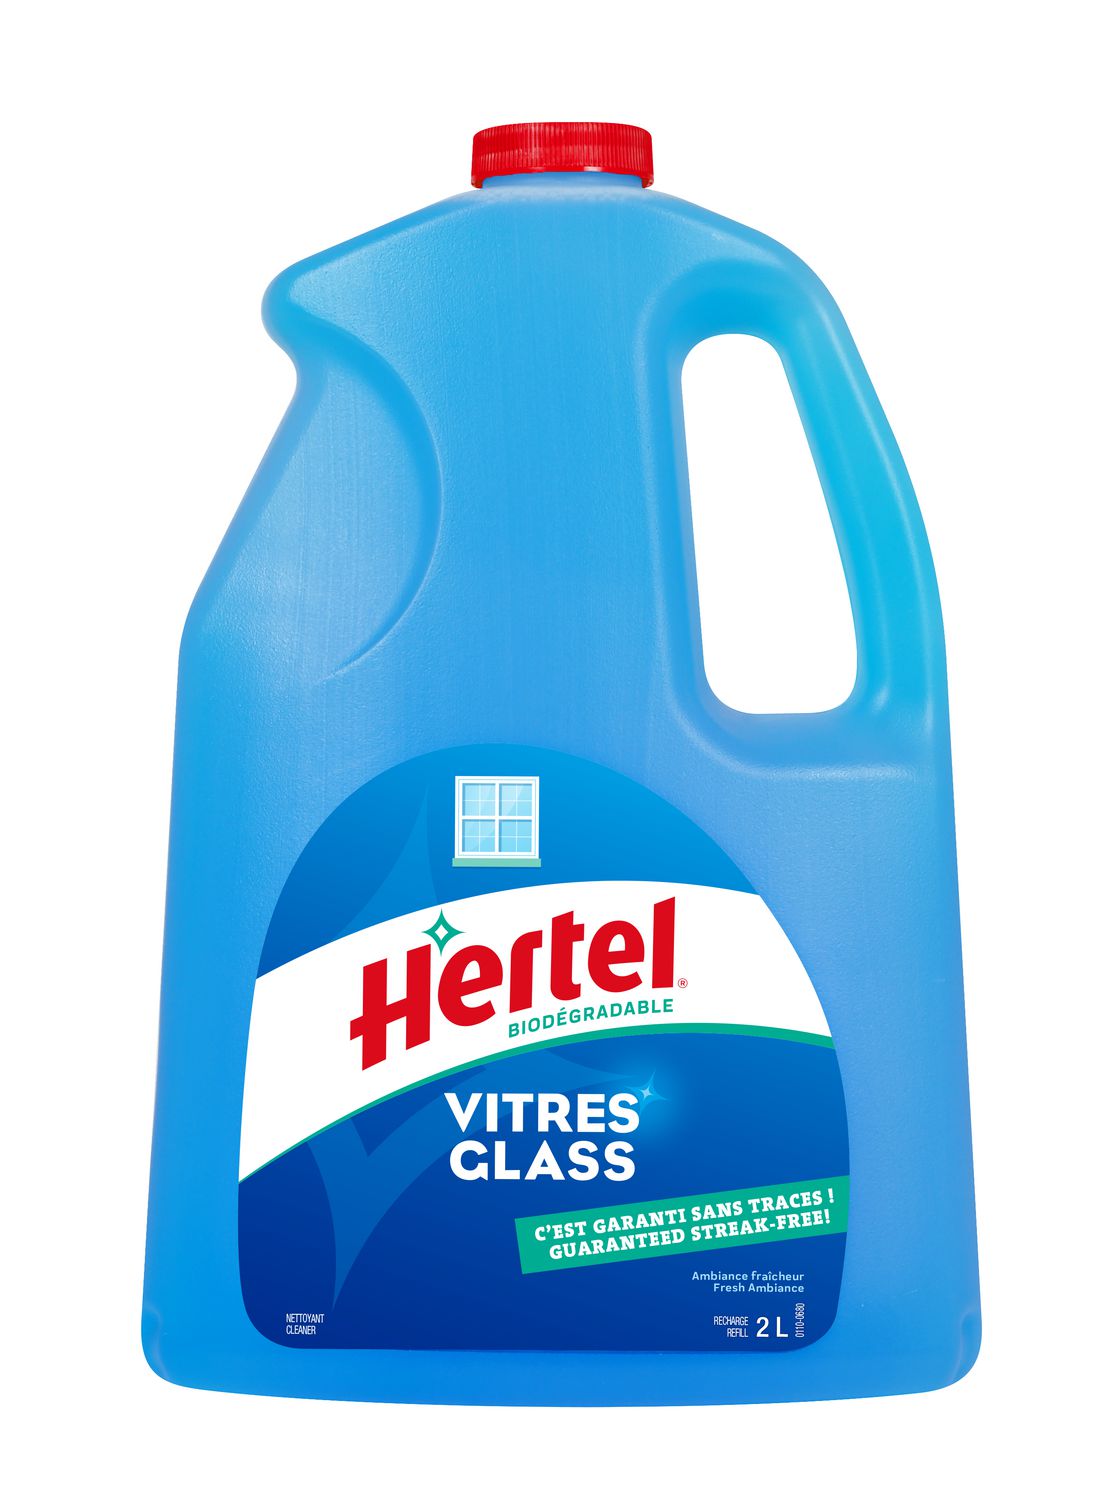 Nettoyant vitres et surfaces, 700 ml, ambiance fraîcheur – Hertel : Lave- vitre